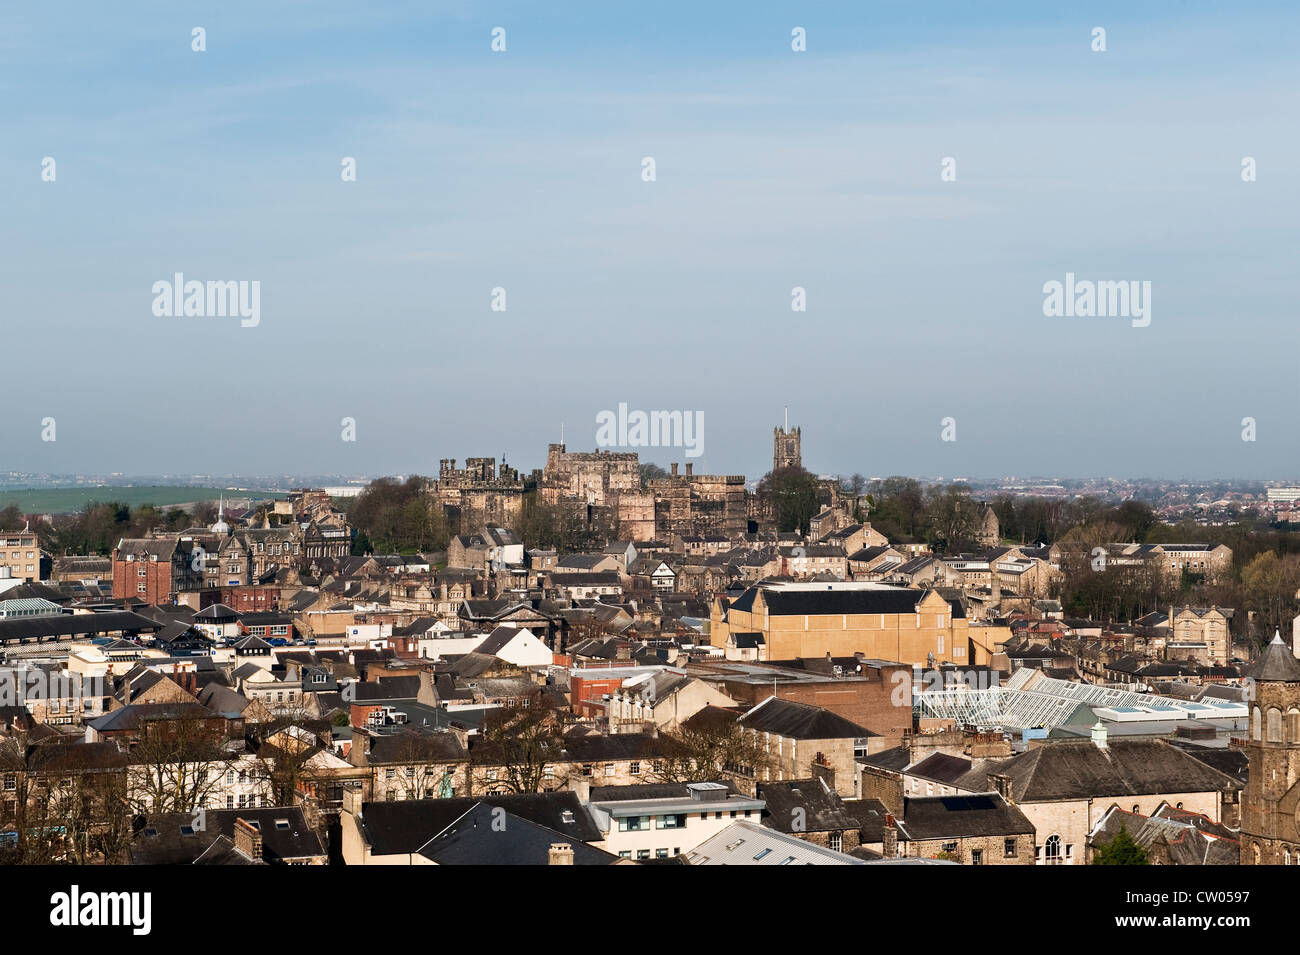 Vue sur la ville de Lancaster, Royaume-Uni, vue depuis la tour de la cathédrale Saint-Pierre, avec l'ancienne prison du château de Lancaster en arrière-plan Banque D'Images